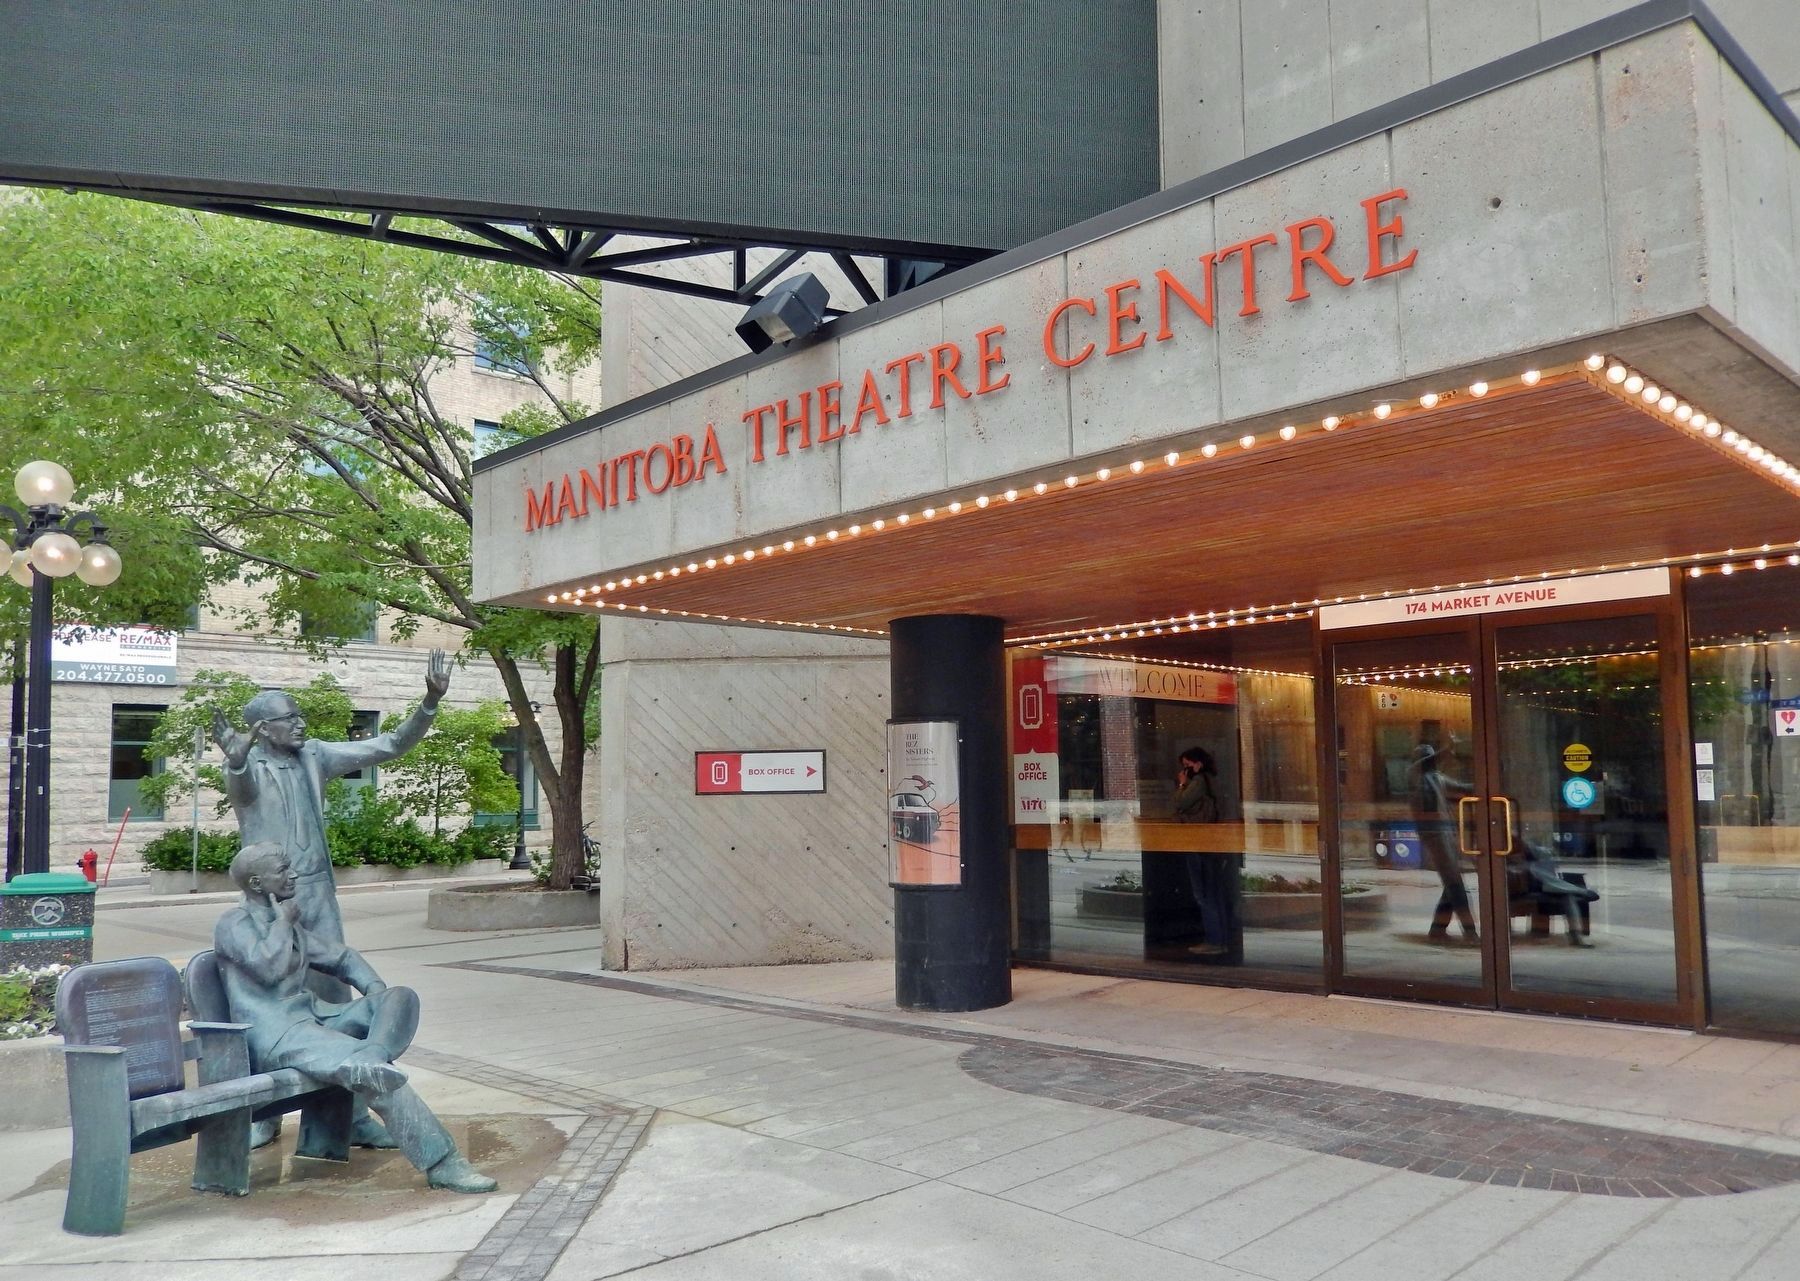 Manitoba Theatre Centre image. Click for full size.